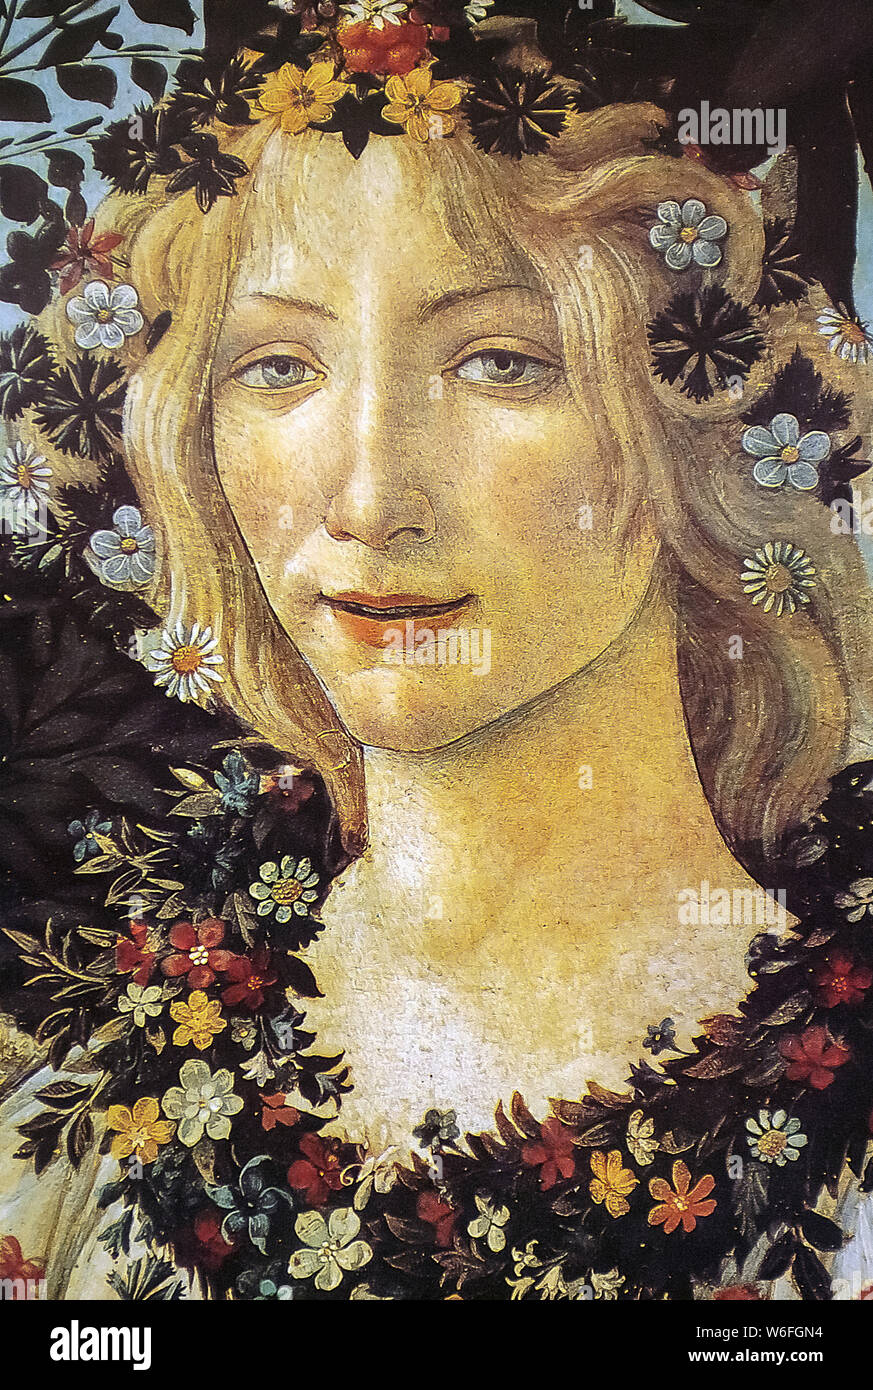 Galerie des Offices de Florence Toscane Italie - Sandro Botticelli " La Primavera " Détail de la flore déesse de la floraison Banque D'Images